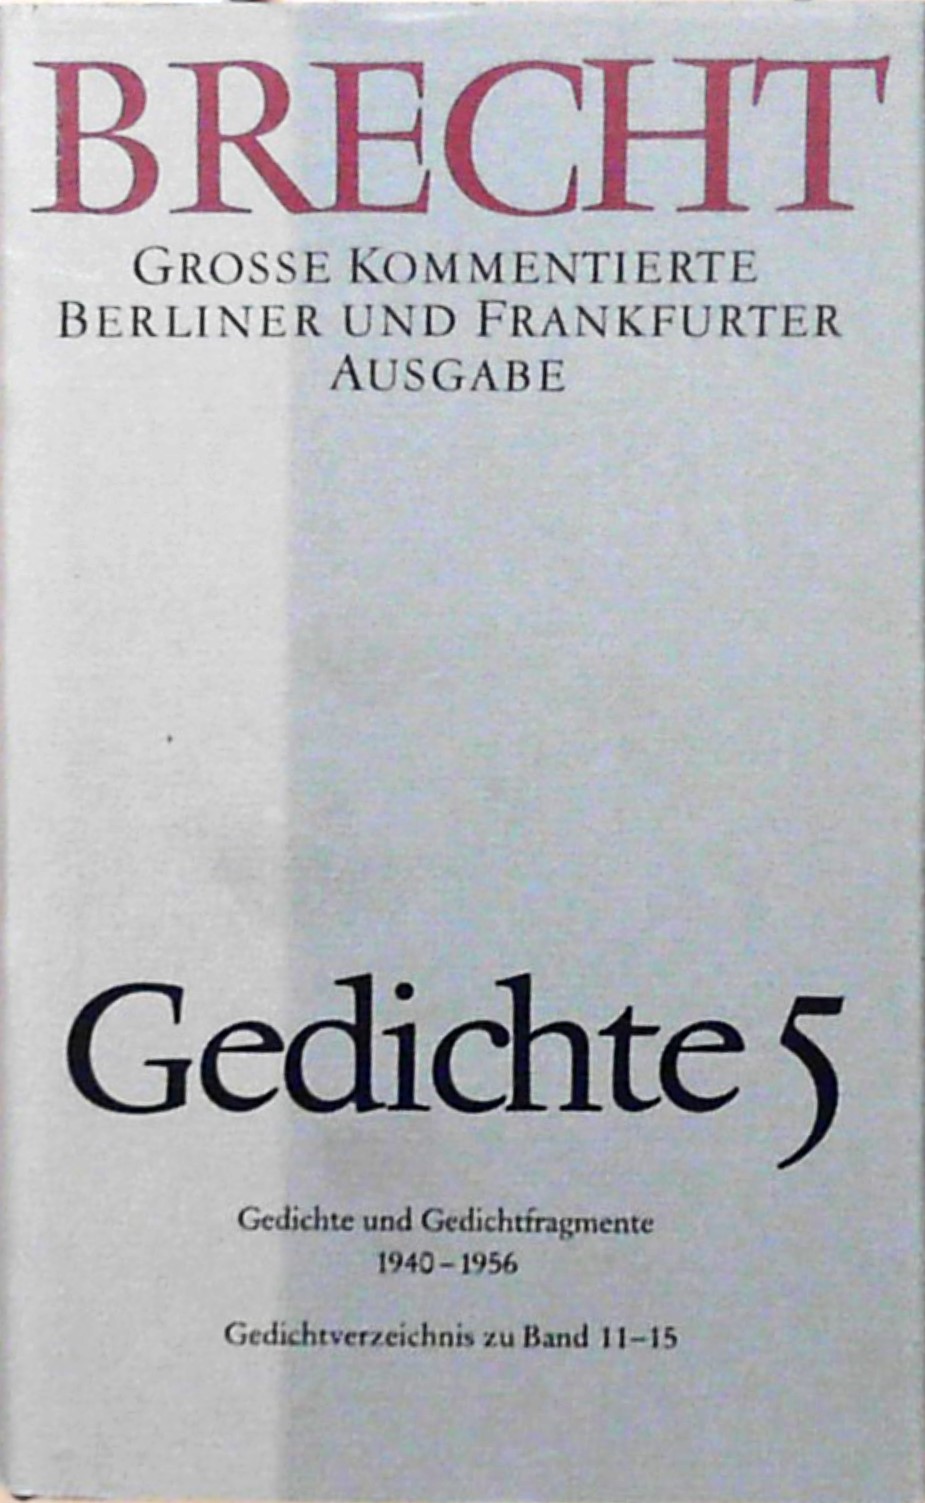 Gedichte 5: Große kommentierte Berliner und Frankfurter Ausgabe, Band 15 Große kommentierte Berliner und Frankfurter Ausgabe, Band 15 - Brecht, Bertolt und Jan Knopf